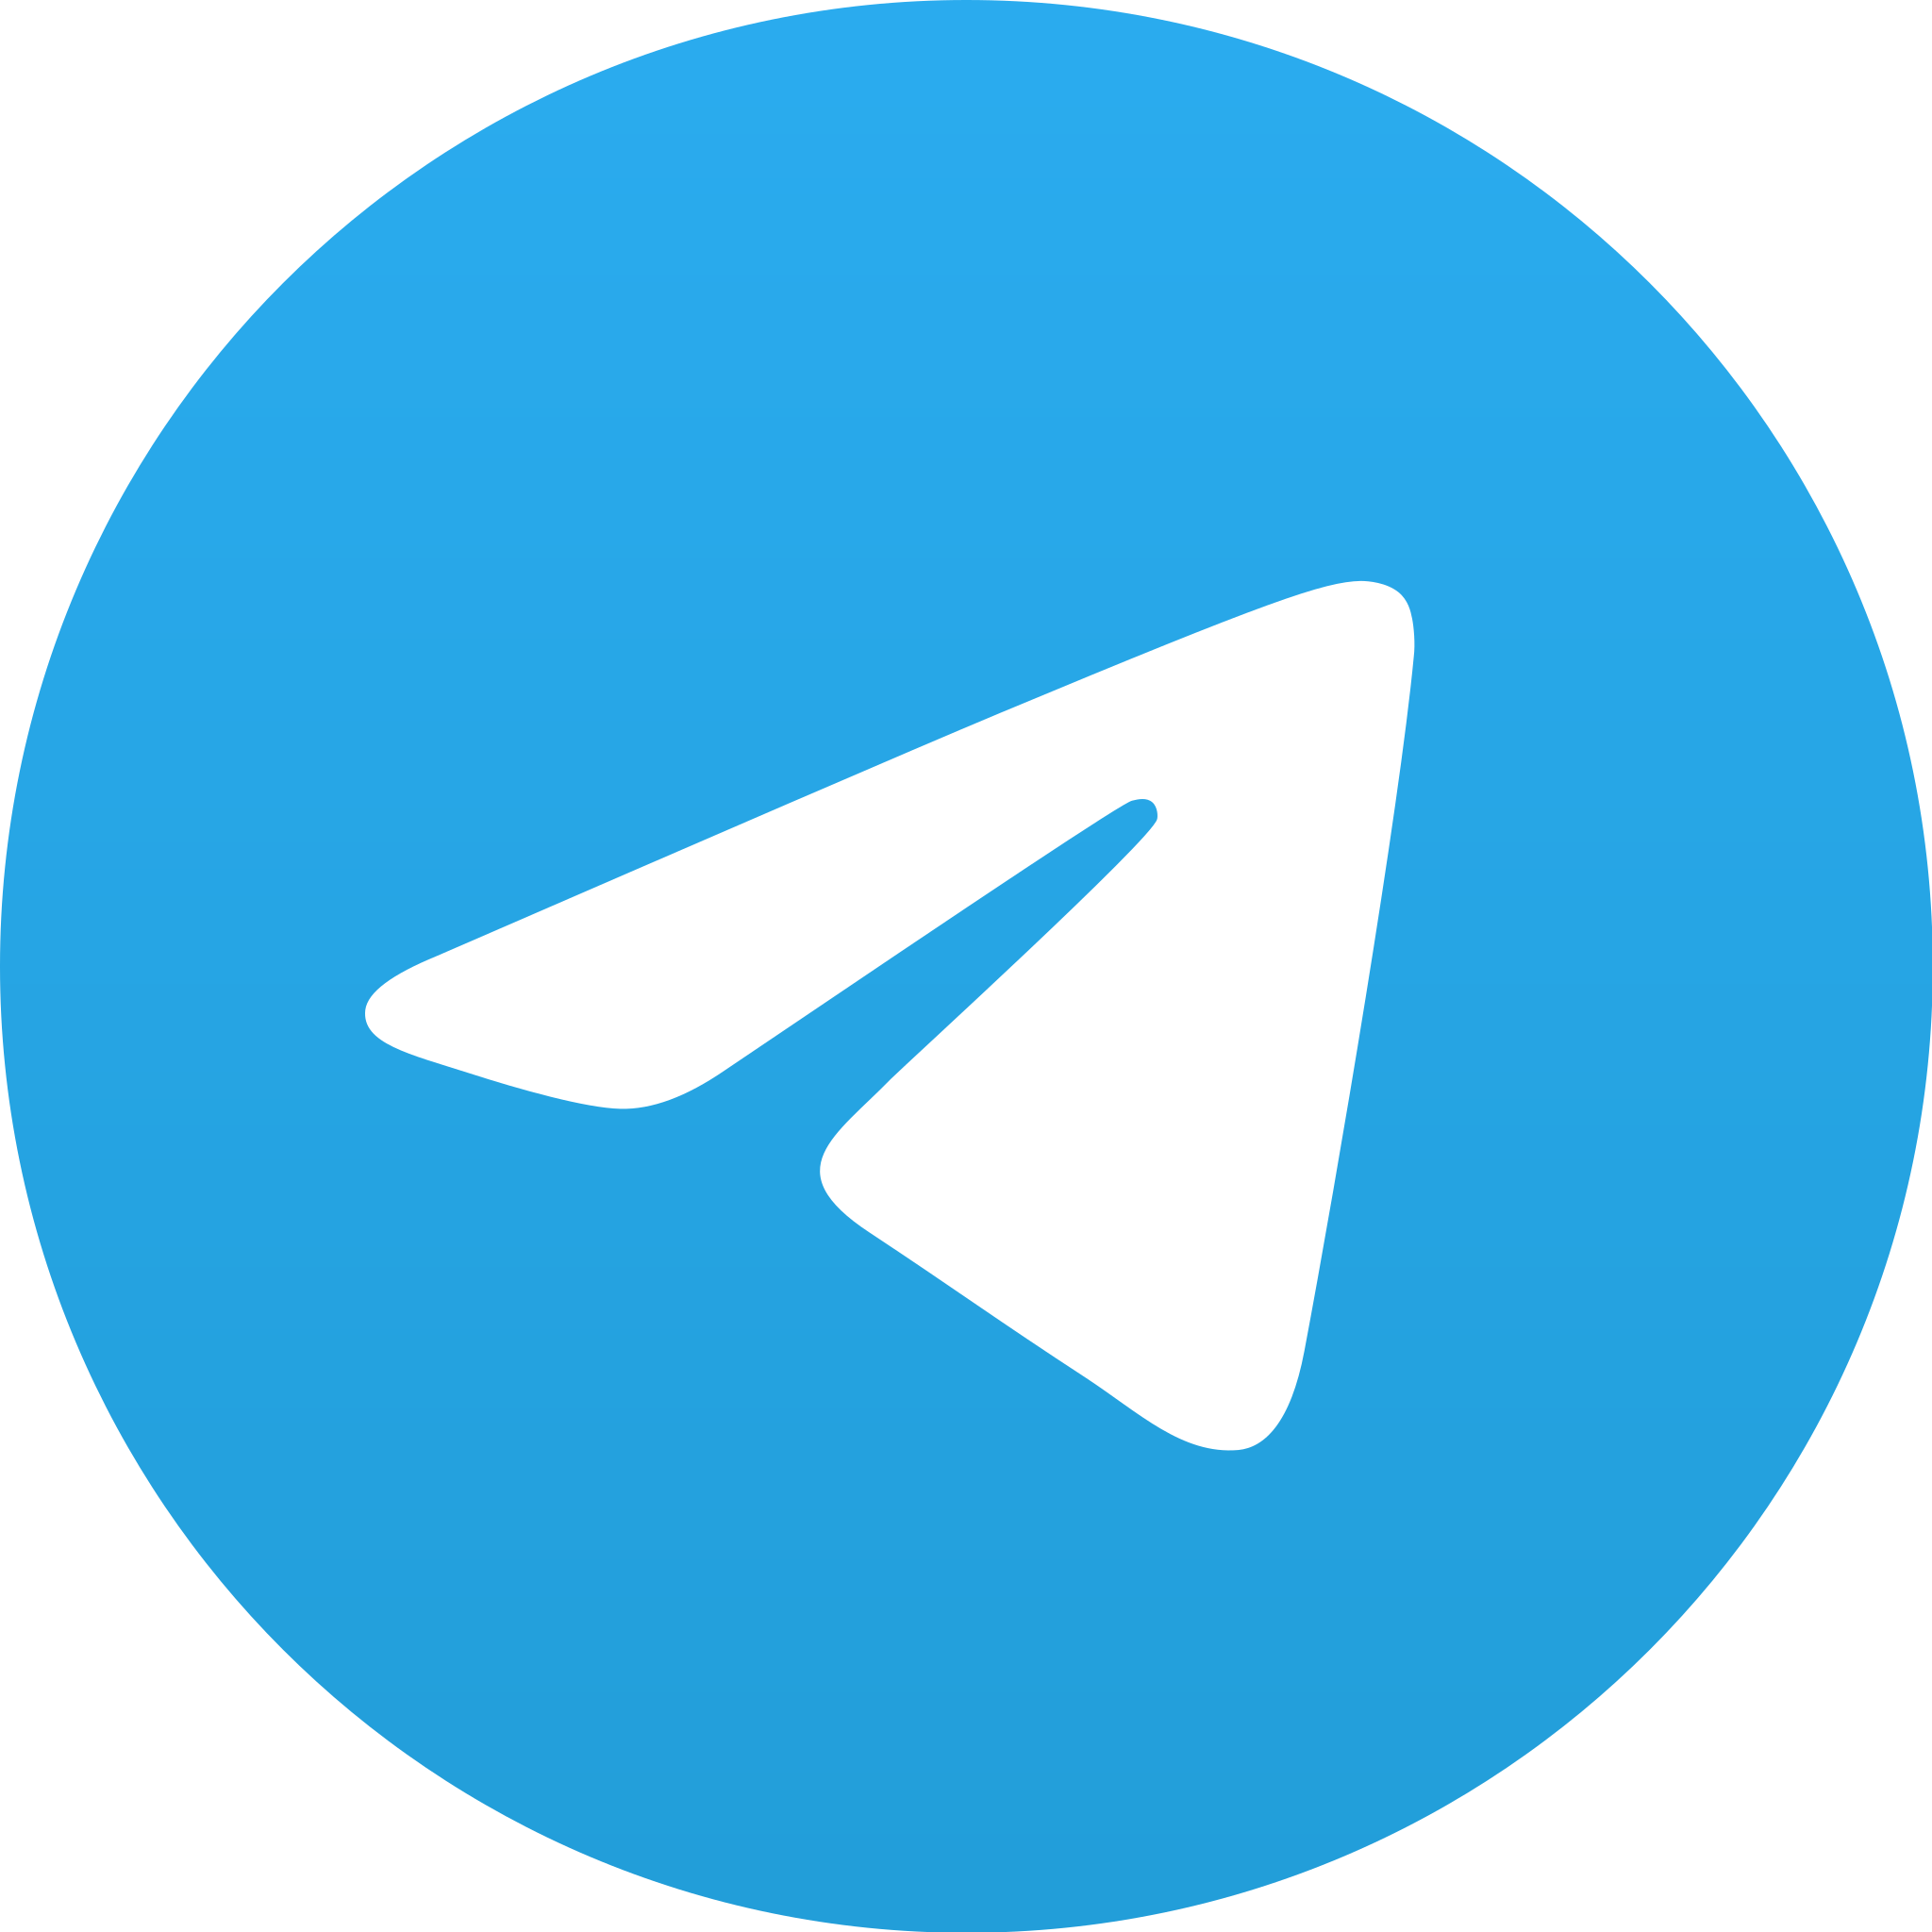 BVI Spring Regatta Telegram channel